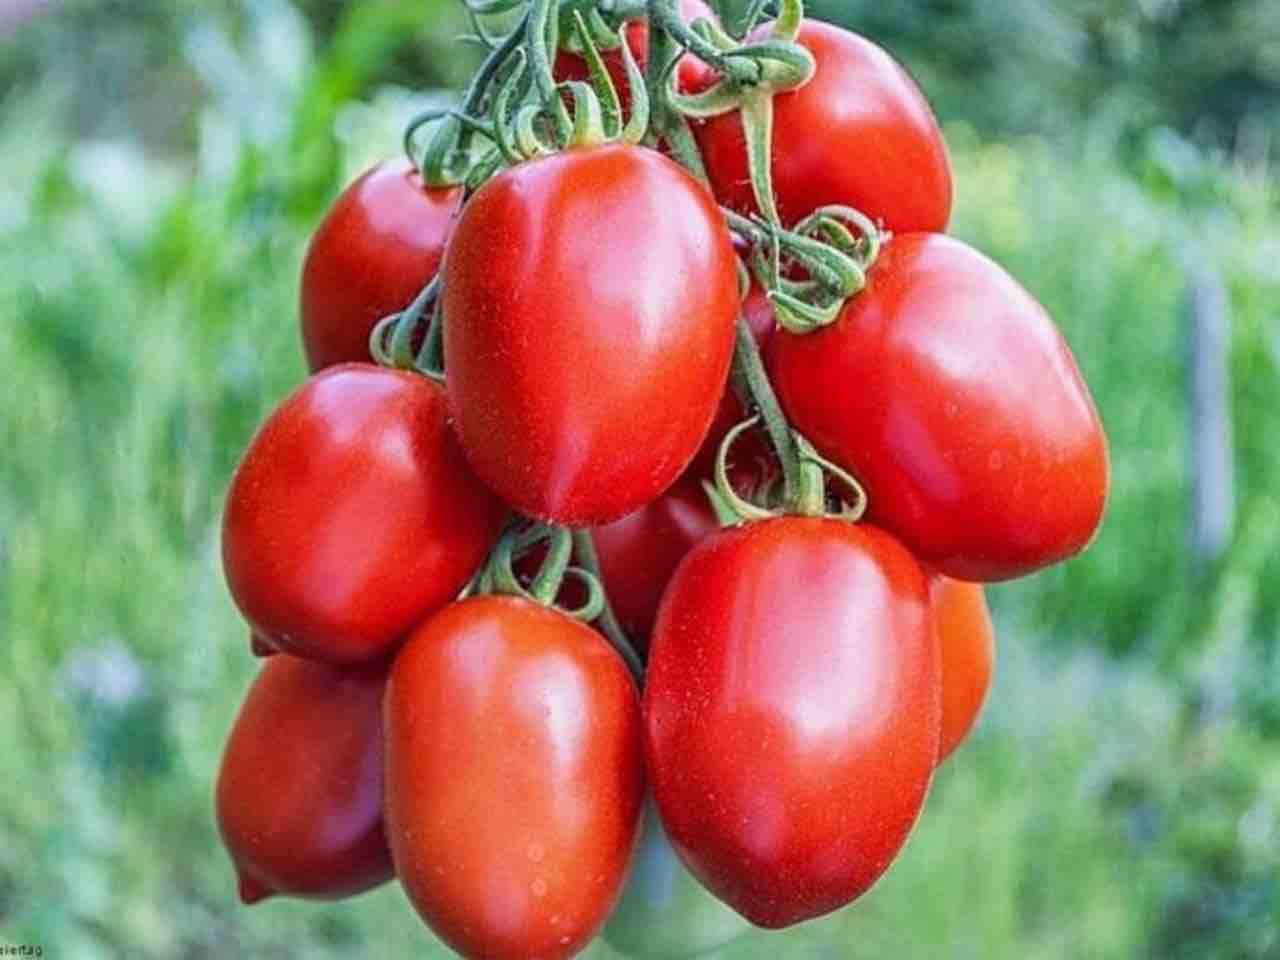 Rio Grande tomatoes on the vine